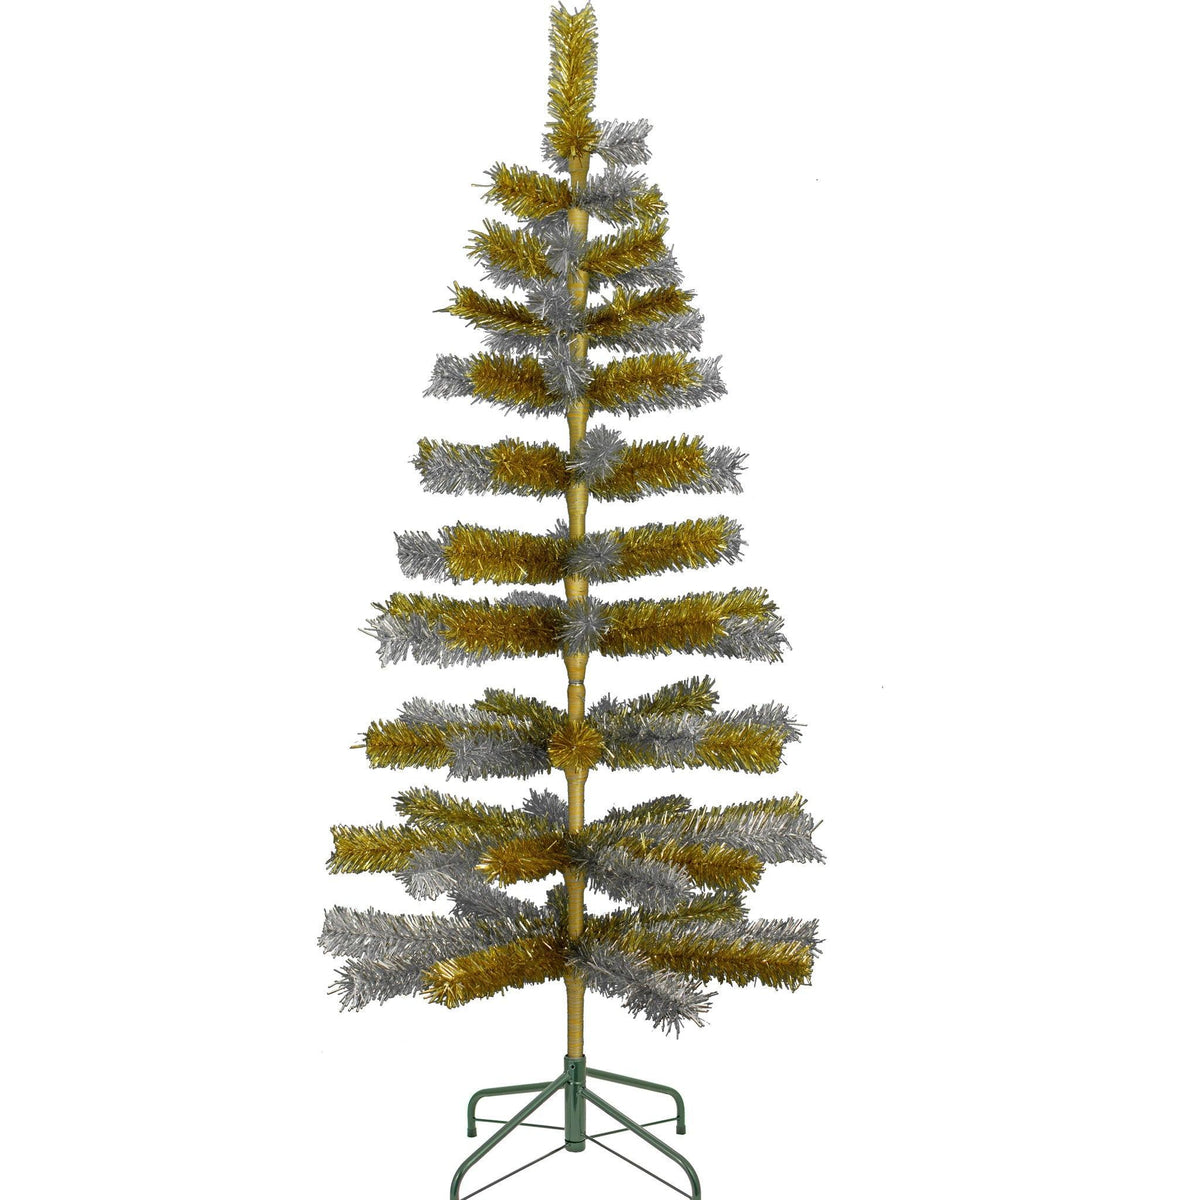 Gold & Silver Mixed Tinsel Christmas Tree - Lee Display